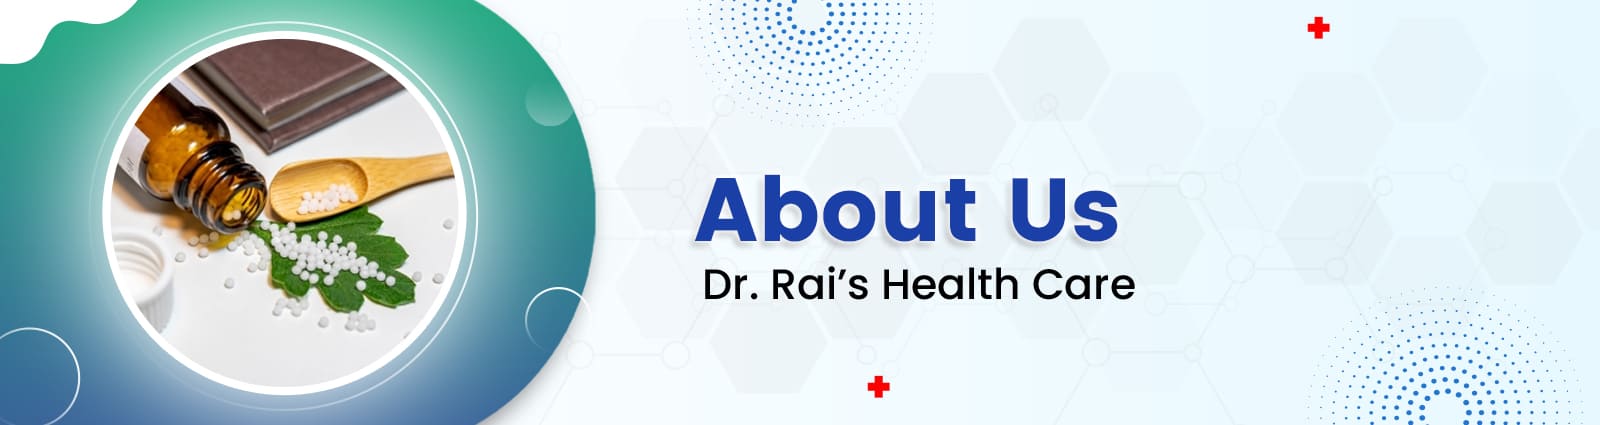 Dr. Rai’s aboutus